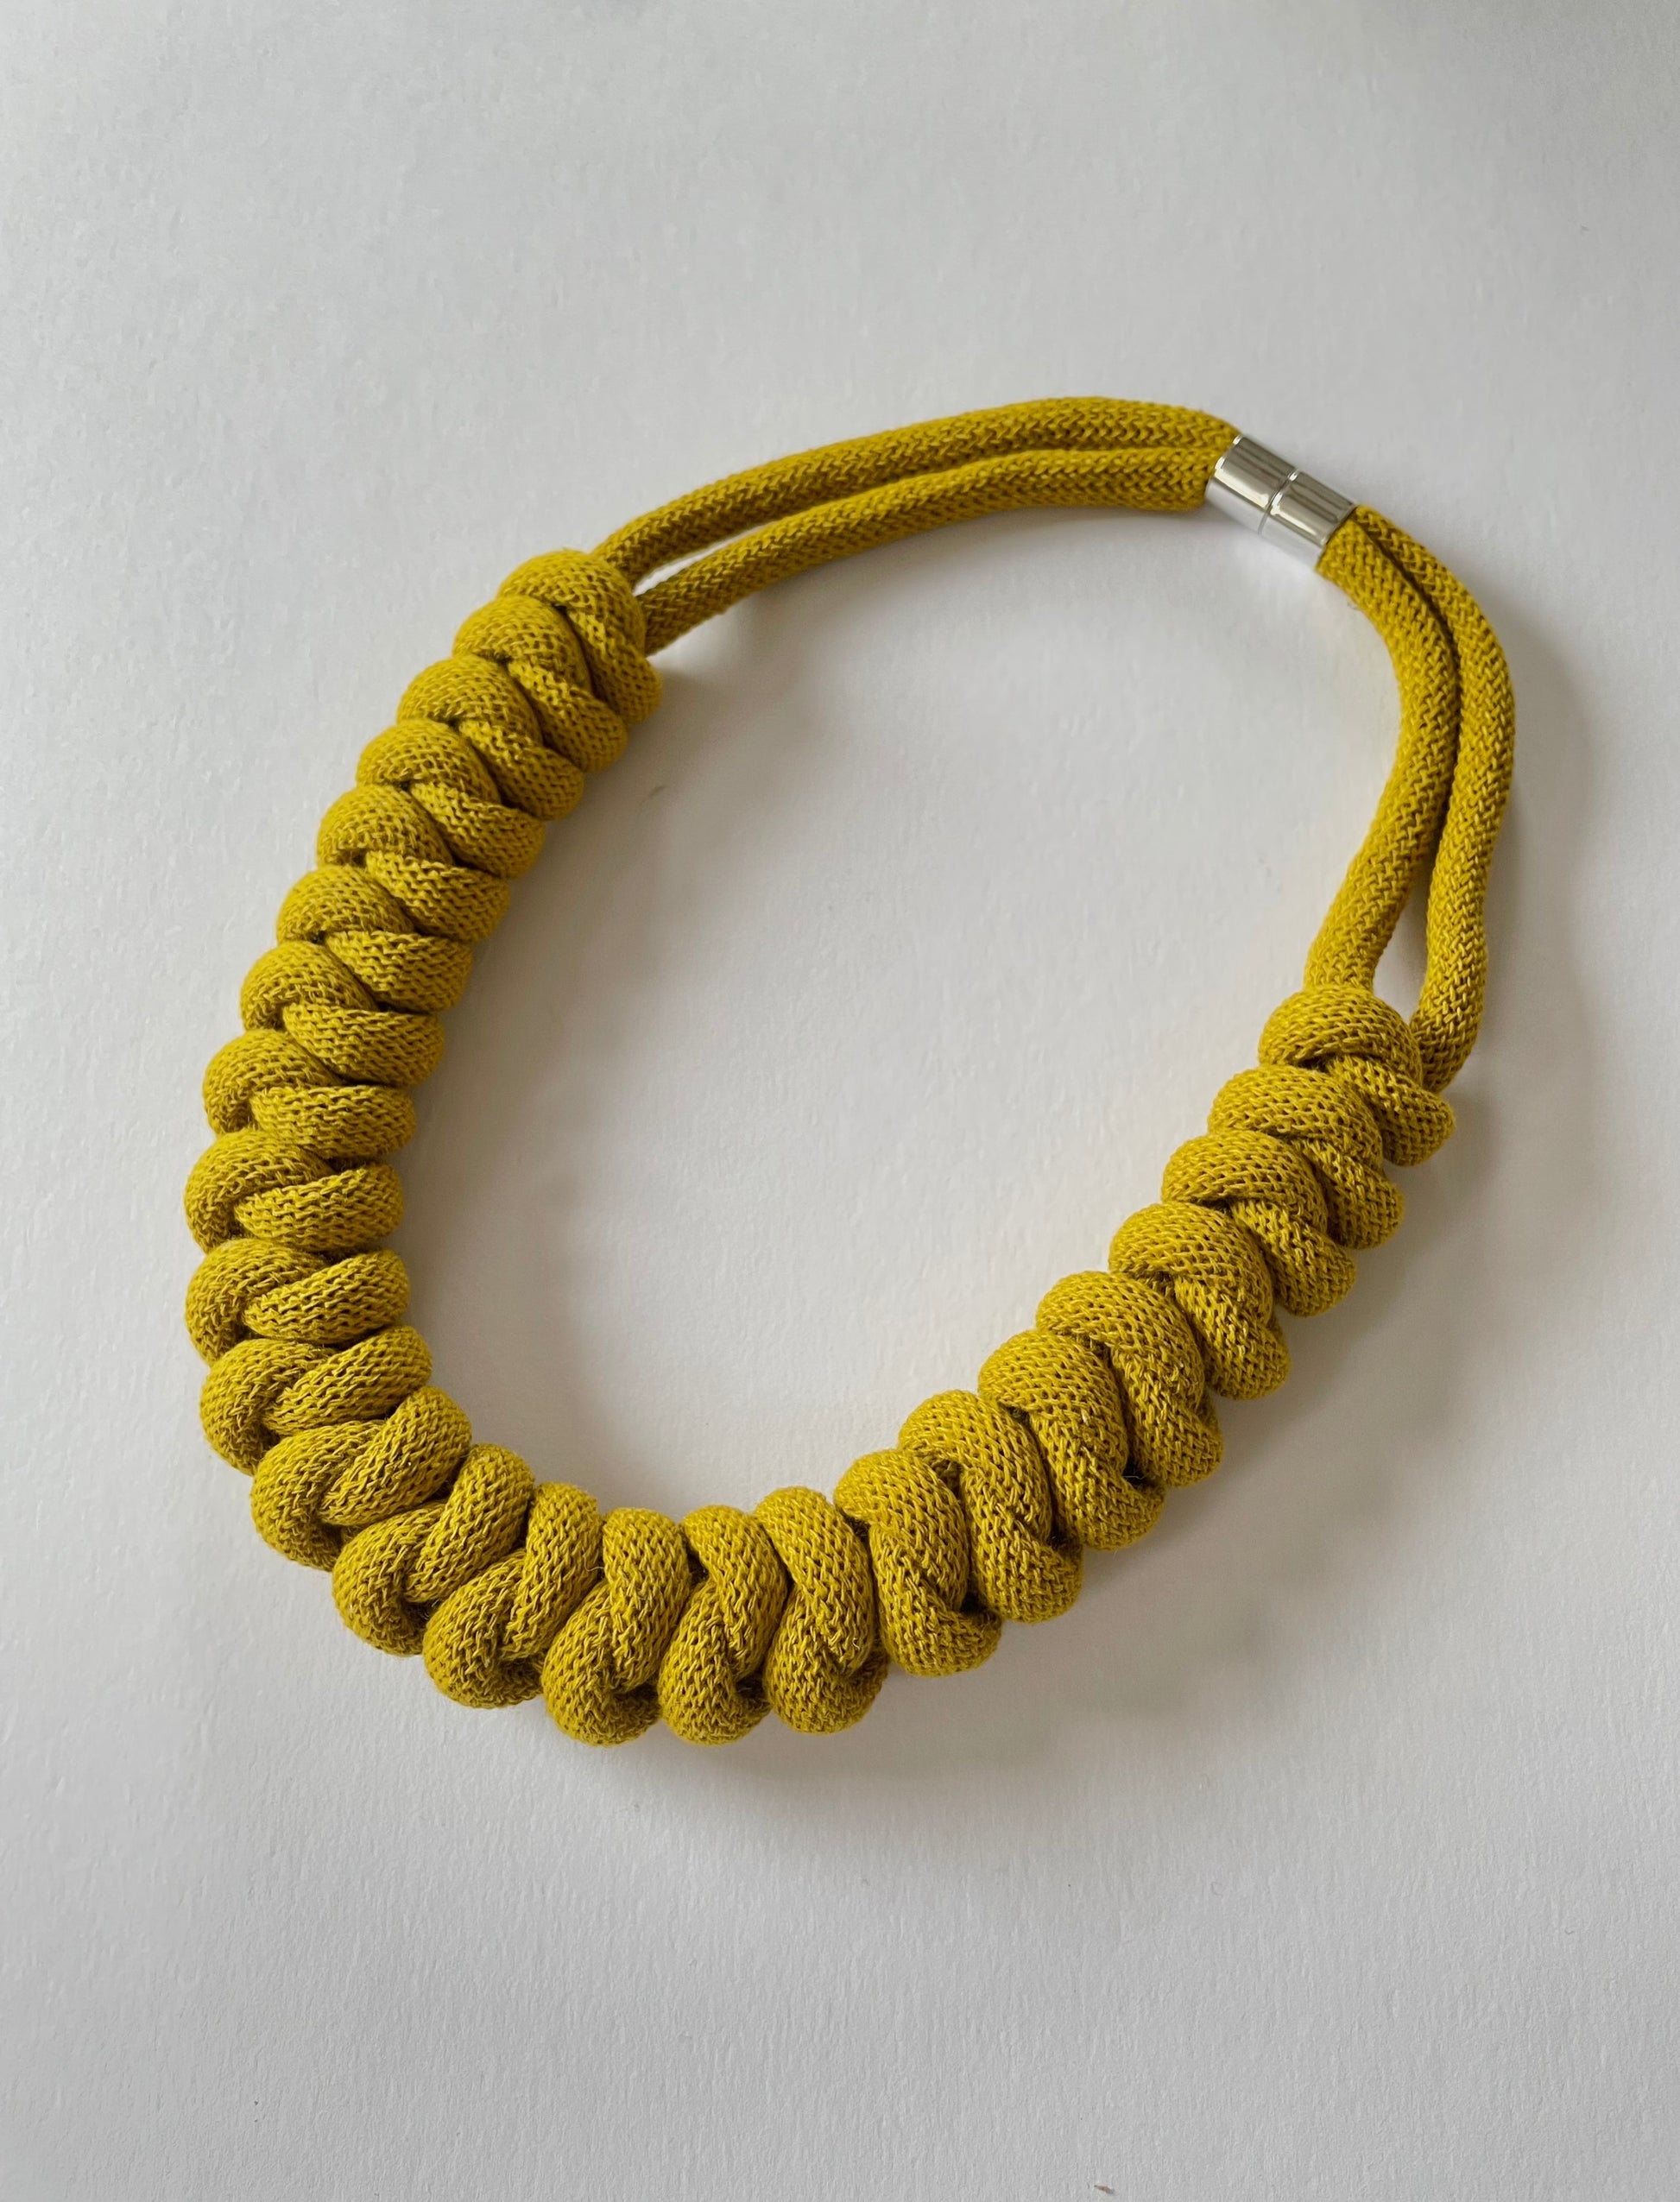 NEW Odin knot rope necklace - Knottinger